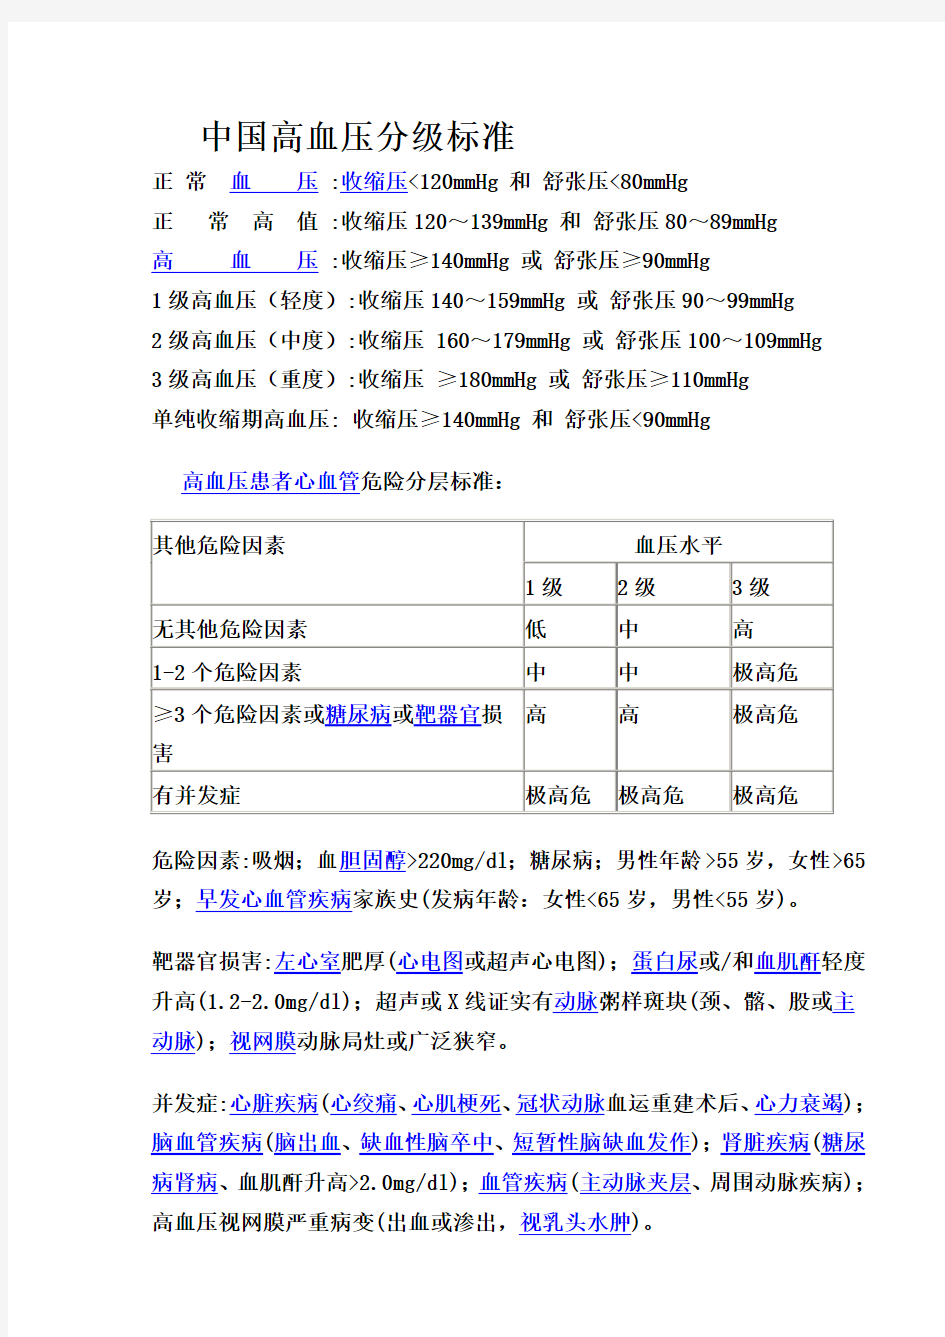 中国高血压分级标准